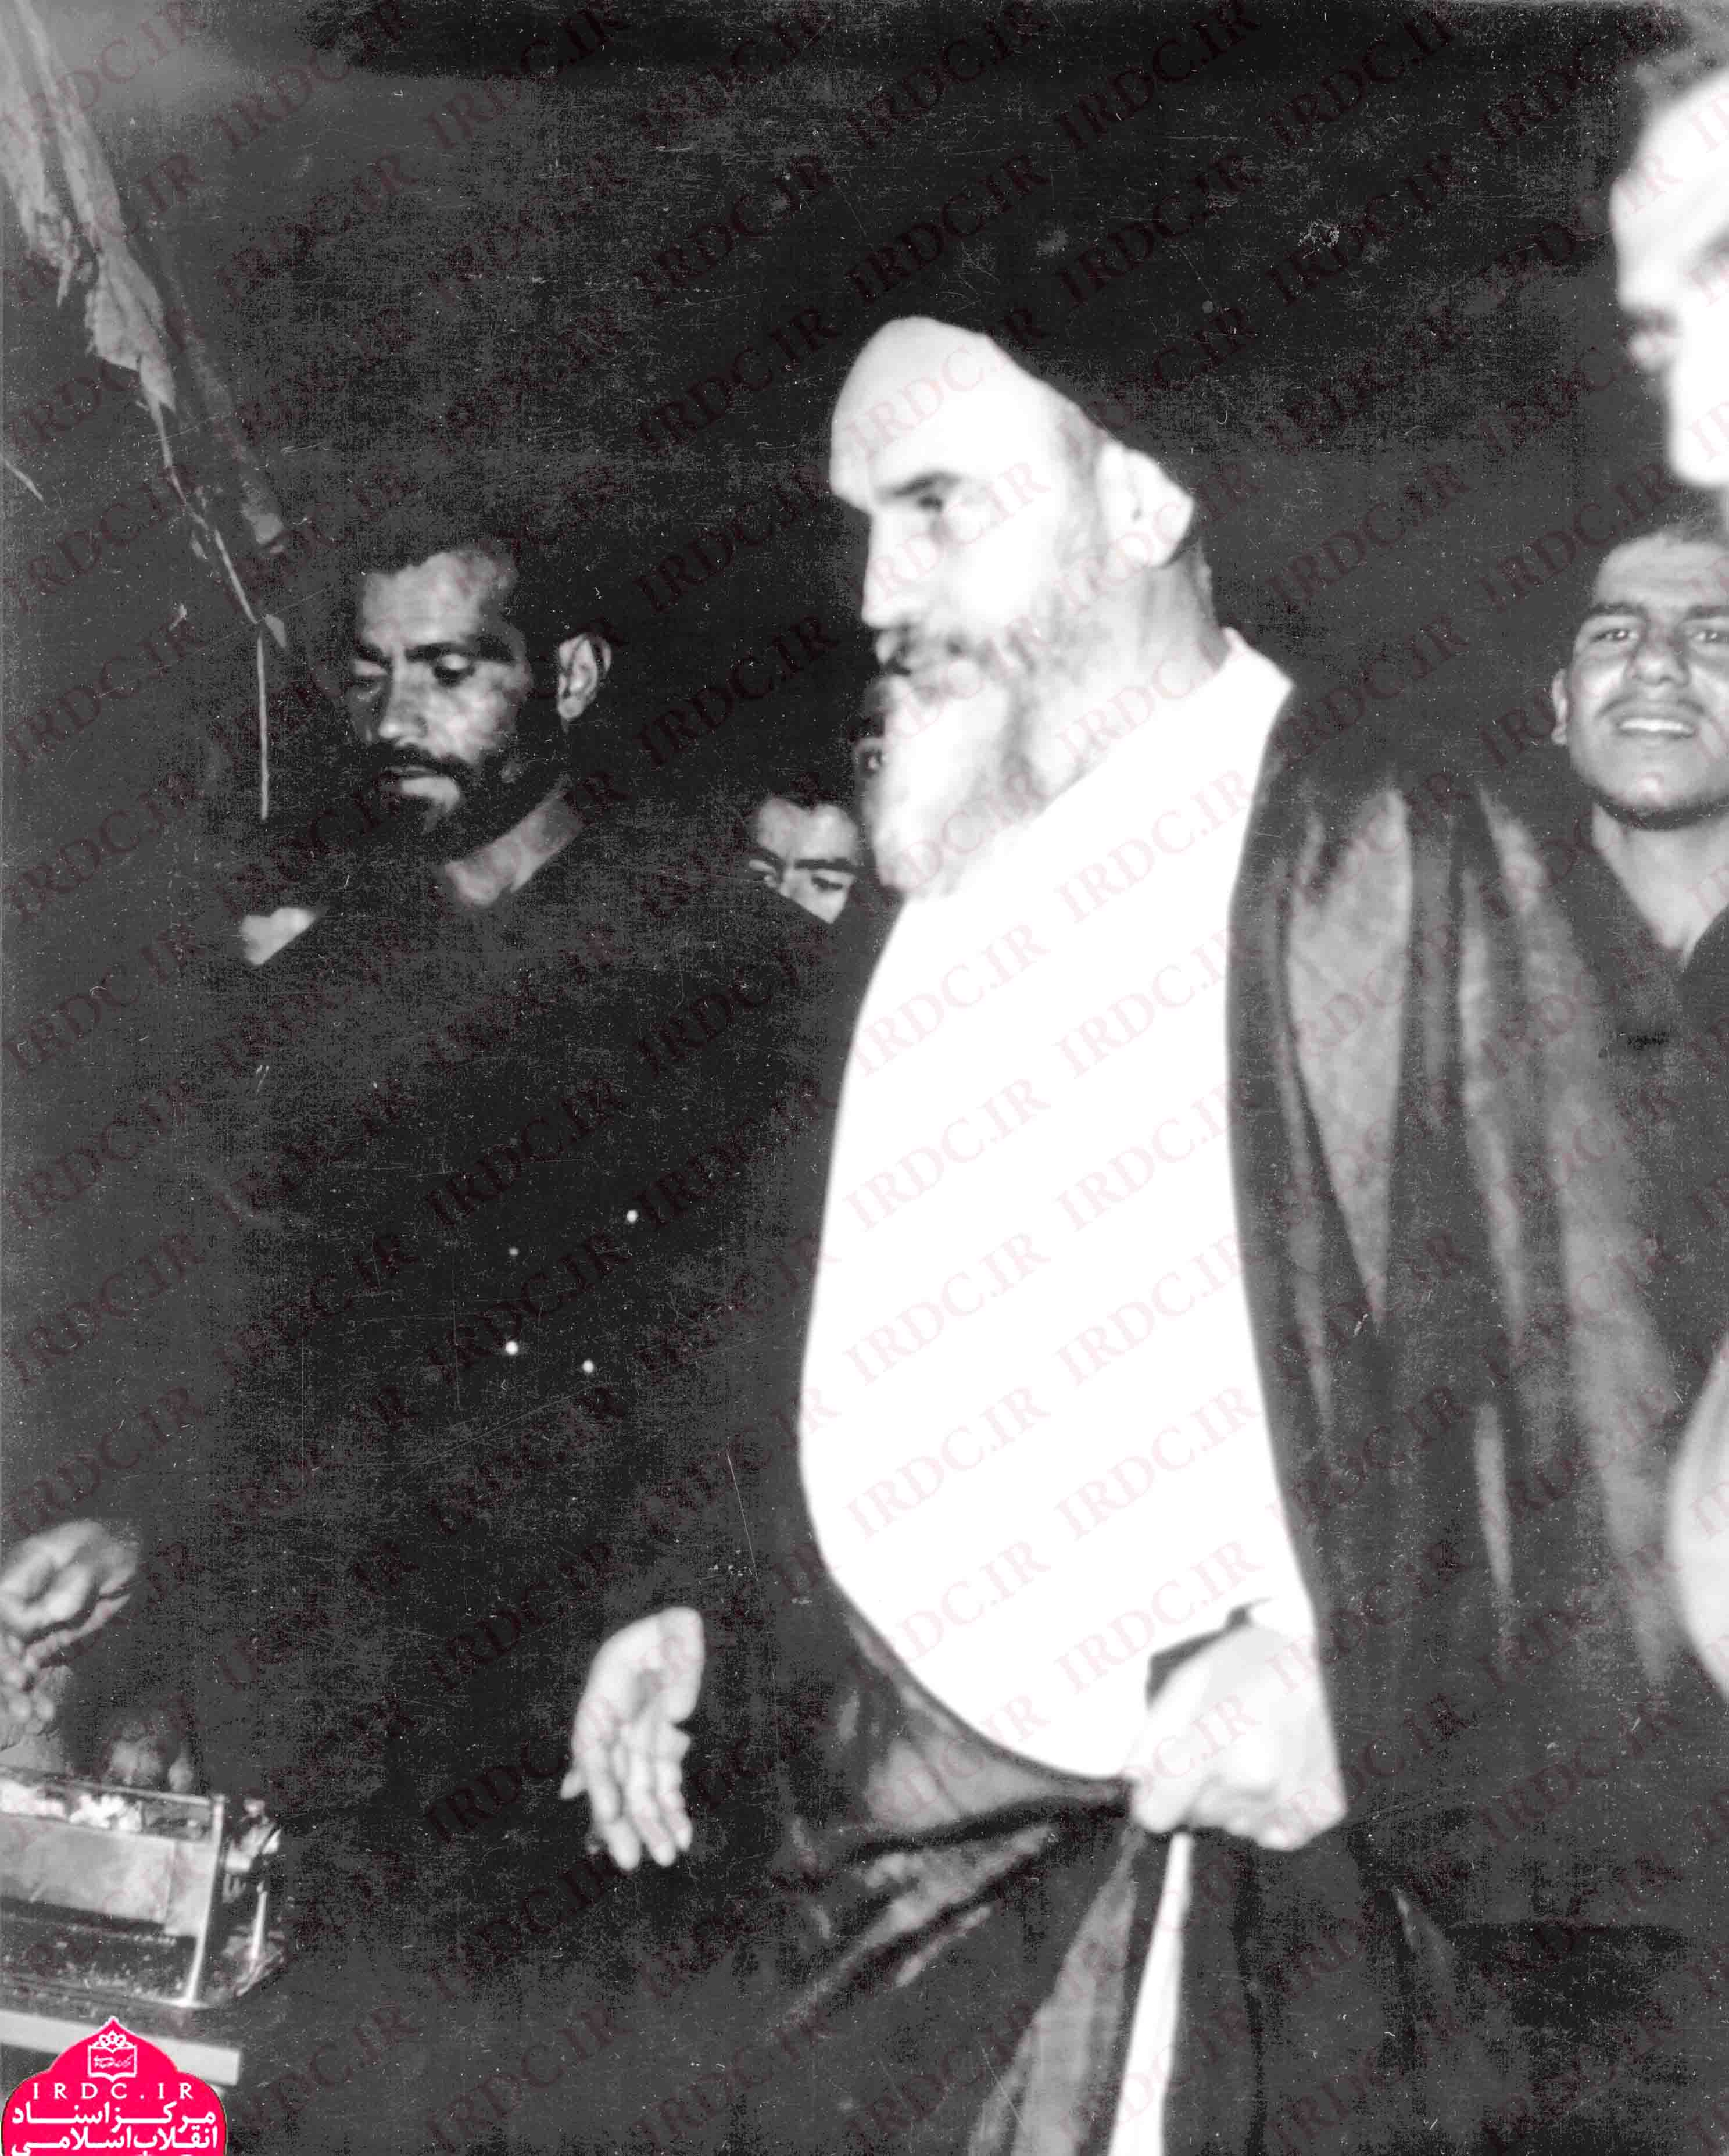 تصاویری از حضور امام خمینی در مجالس عزاداری